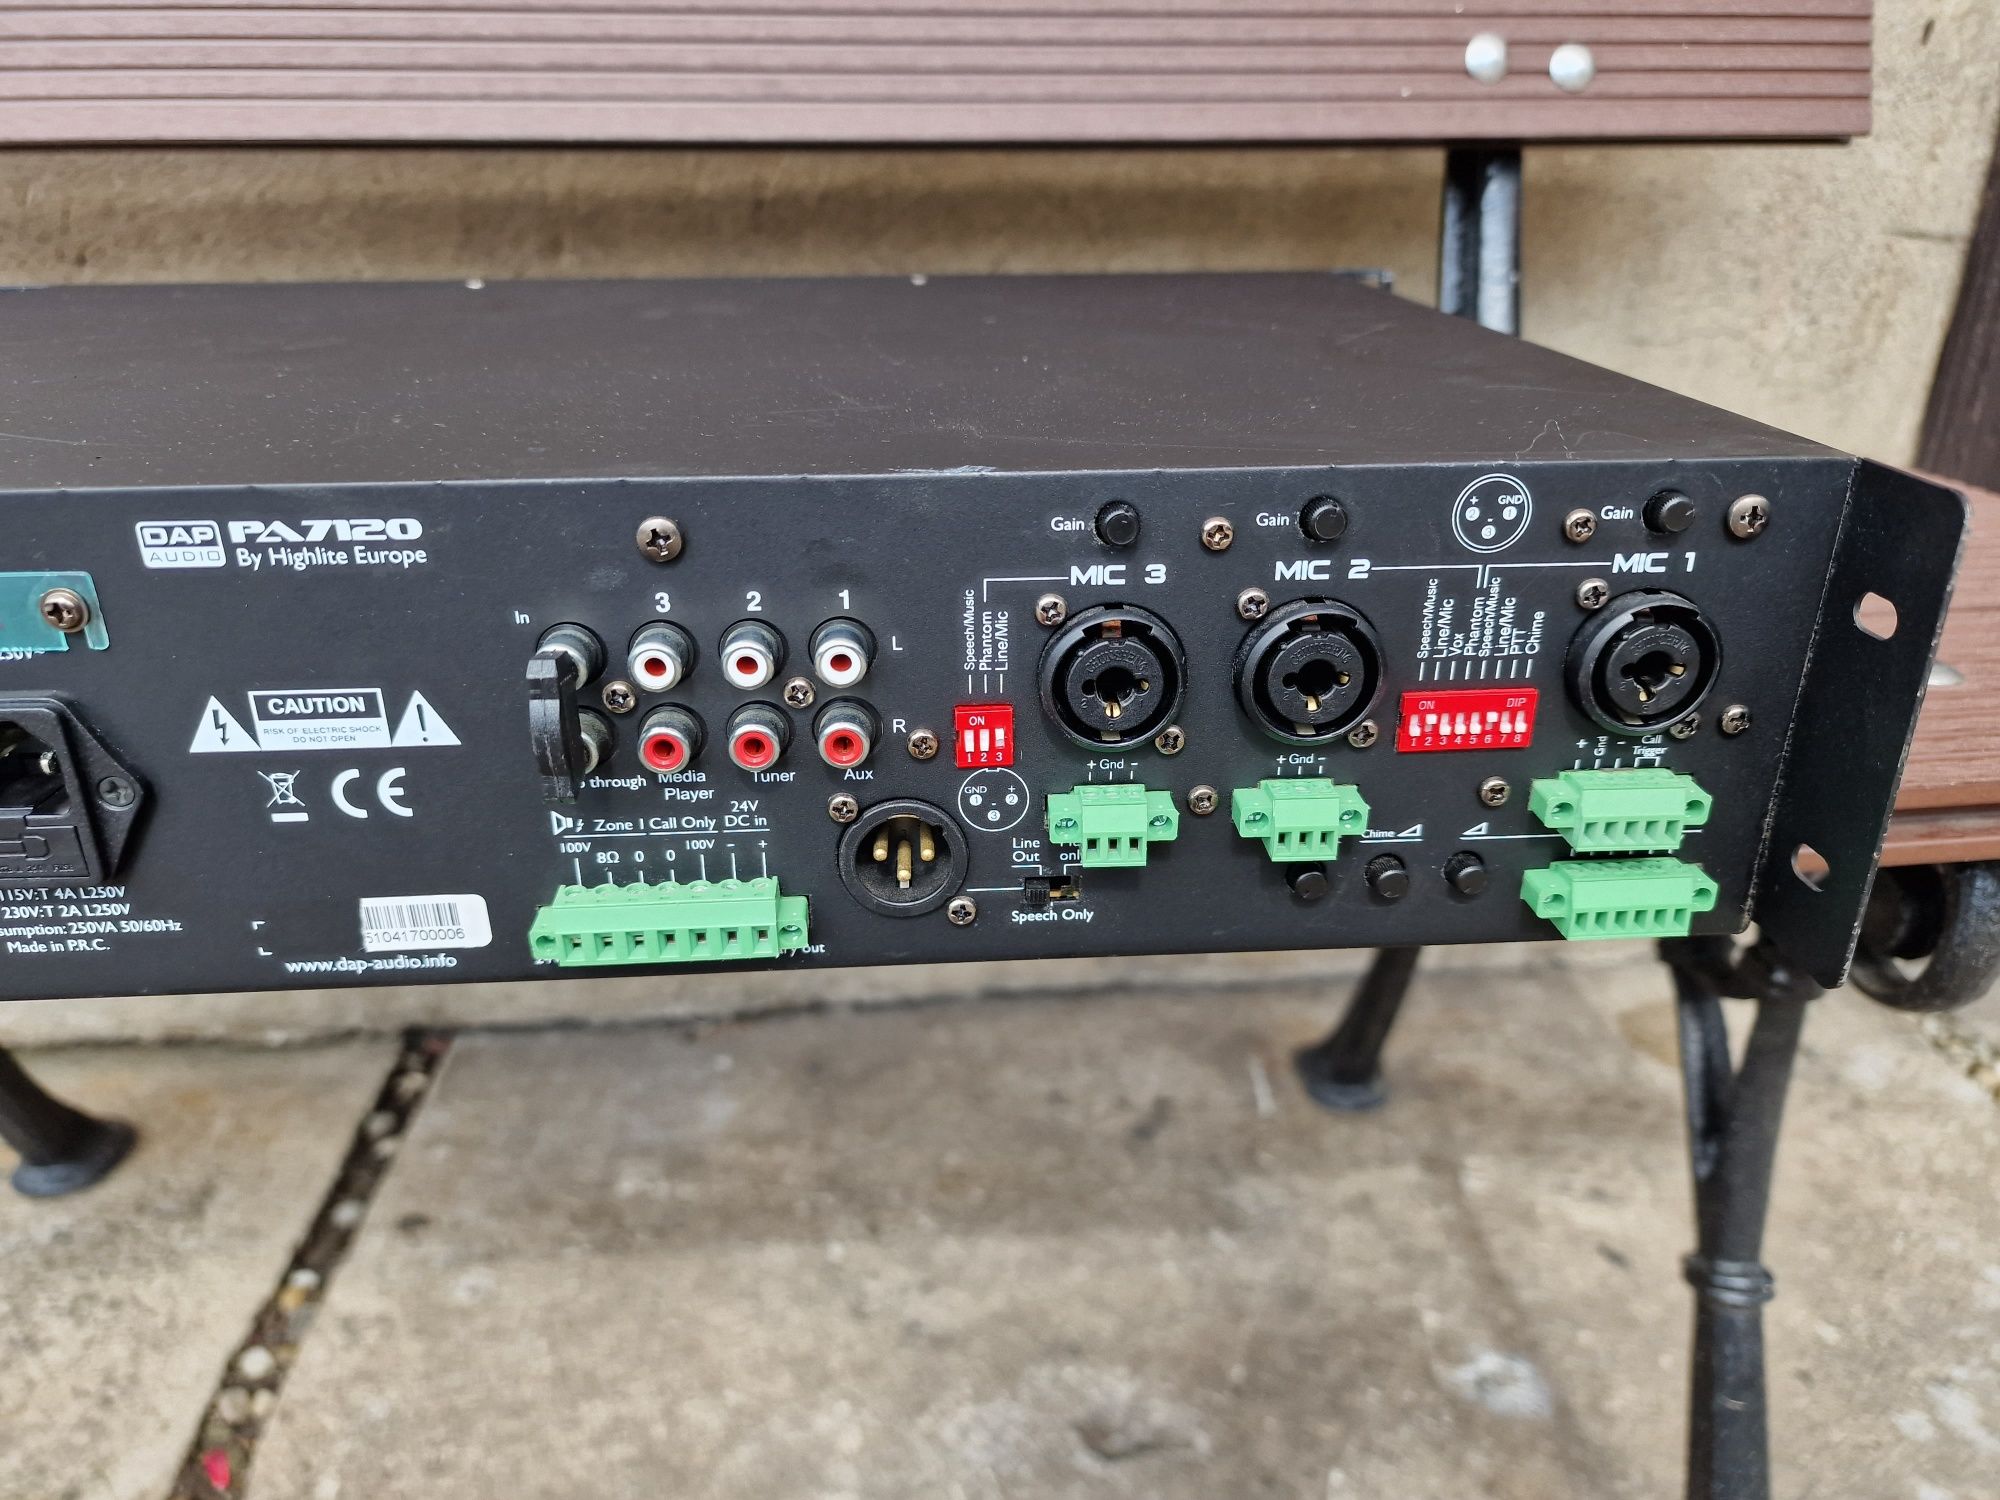 DAP Audio PA-7120 Wzmacniacz 
Wzmacniacz mocy 120W / 100V Specyfikacja